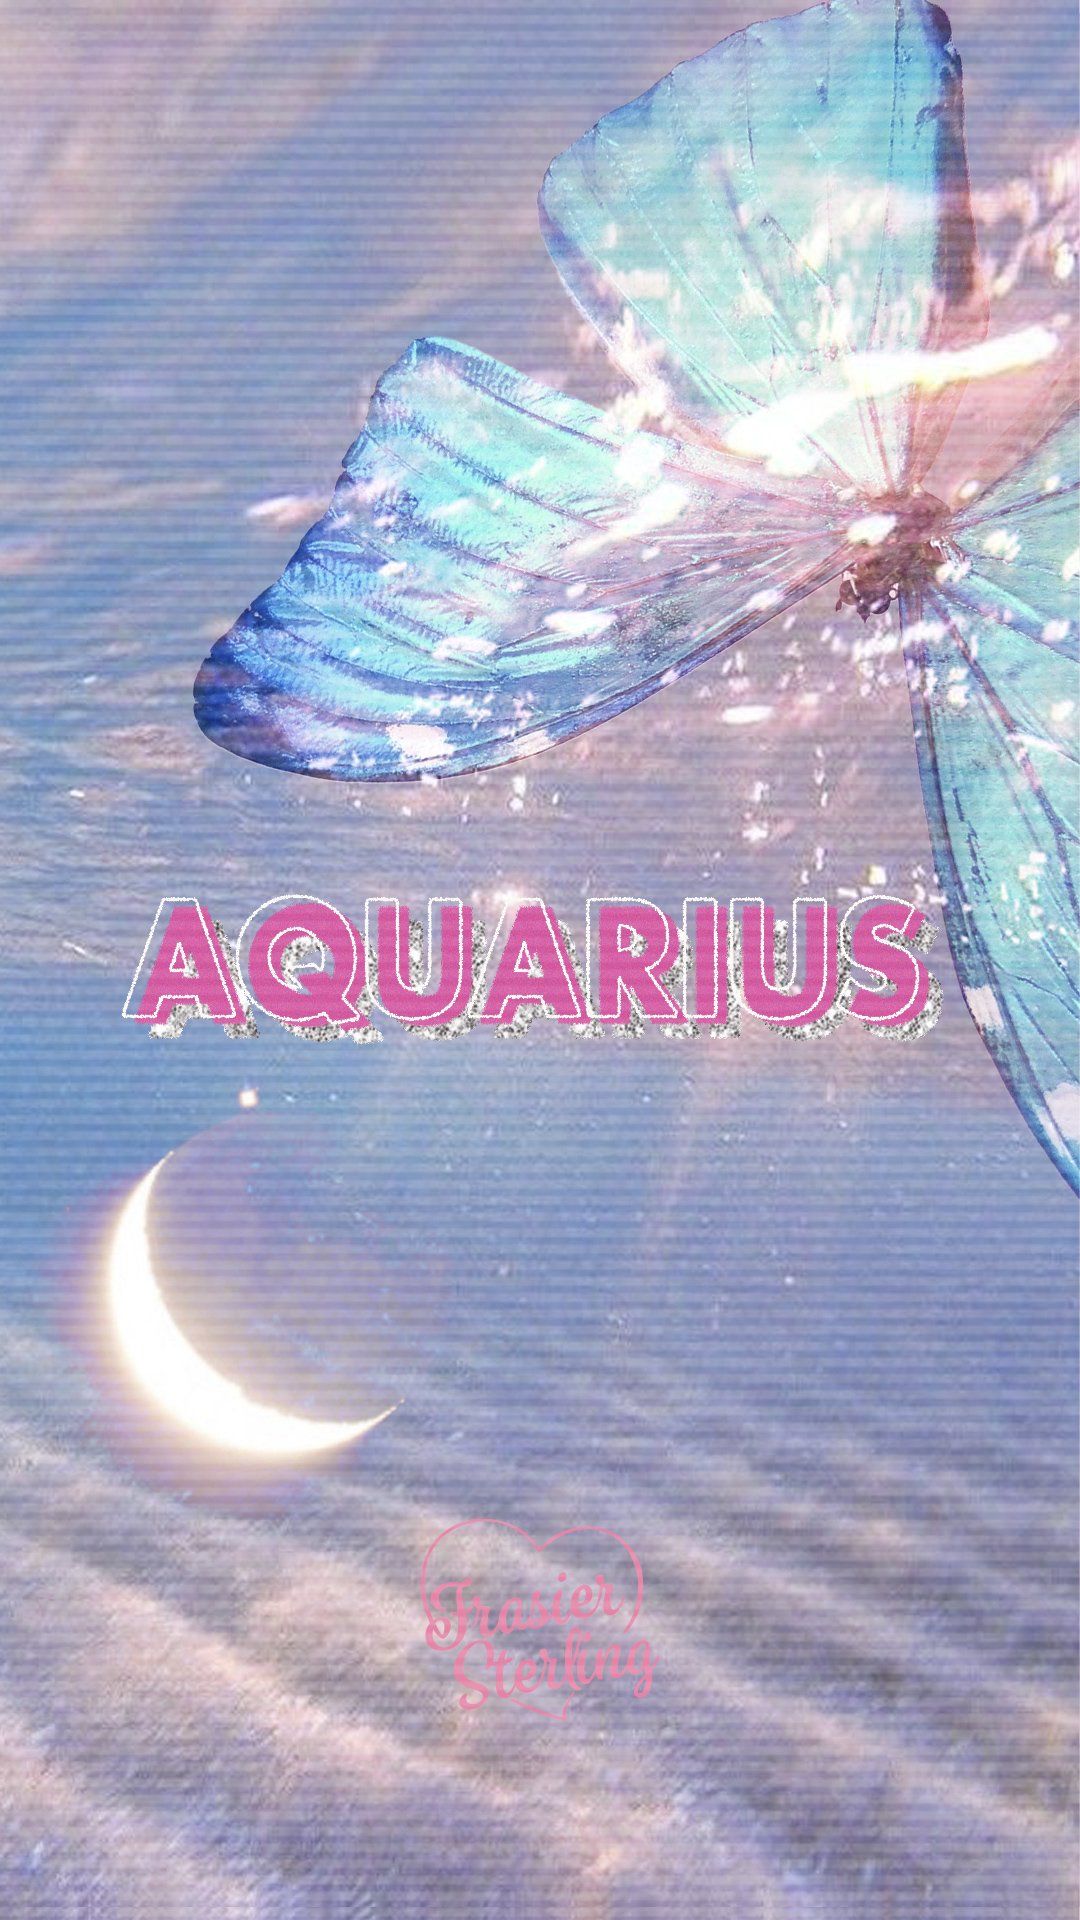 Aquarius Horoscope Today, आज का कुंभ राशिफल 30 मार्च : संपत्ति खरीदने के  लिए अच्छा दिन, धन खर्च के भी योग